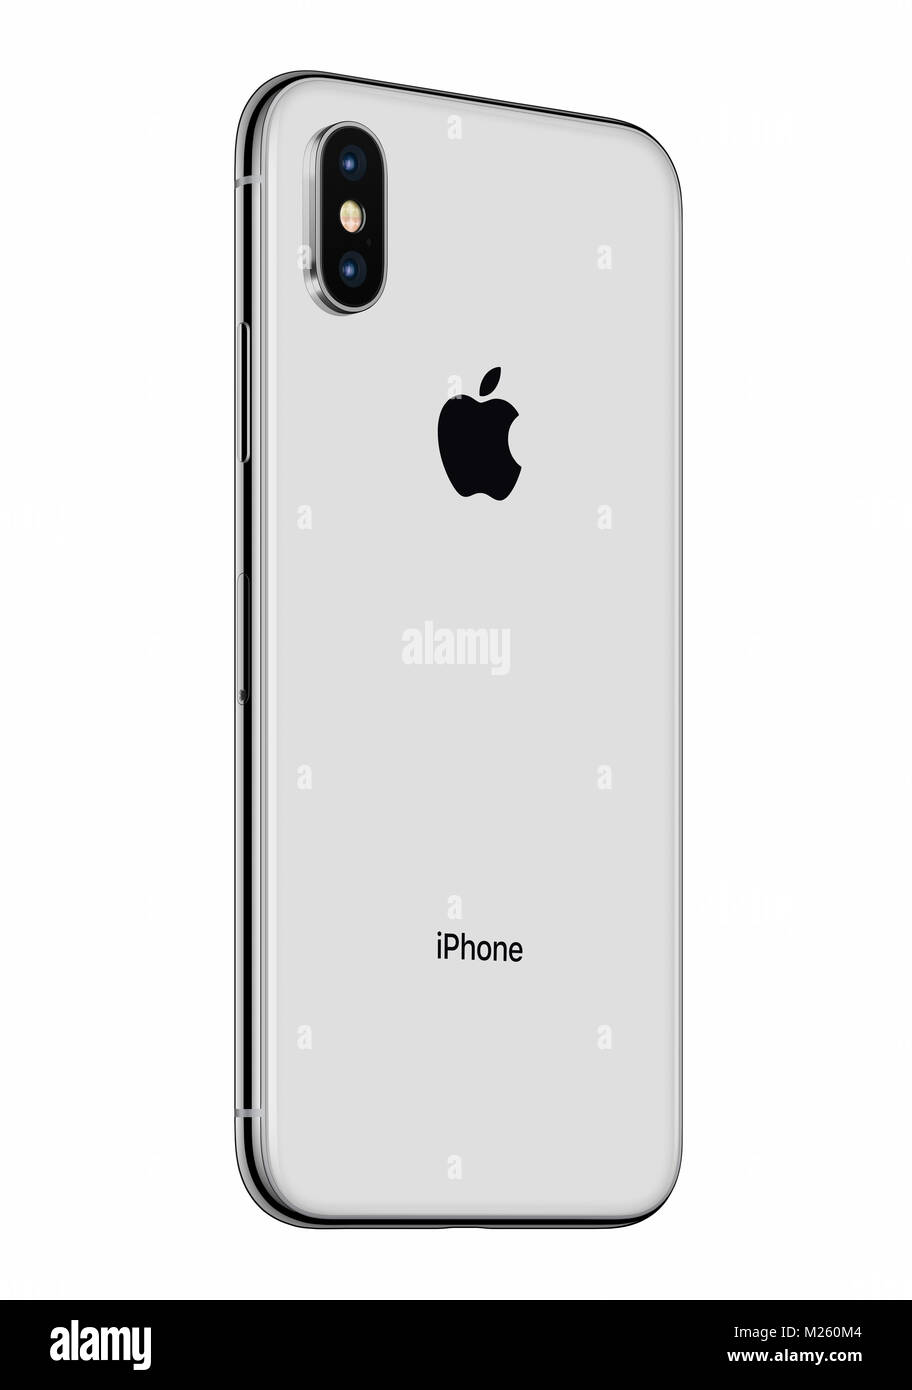 Apple iphone 10 immagini e fotografie stock ad alta risoluzione - Alamy